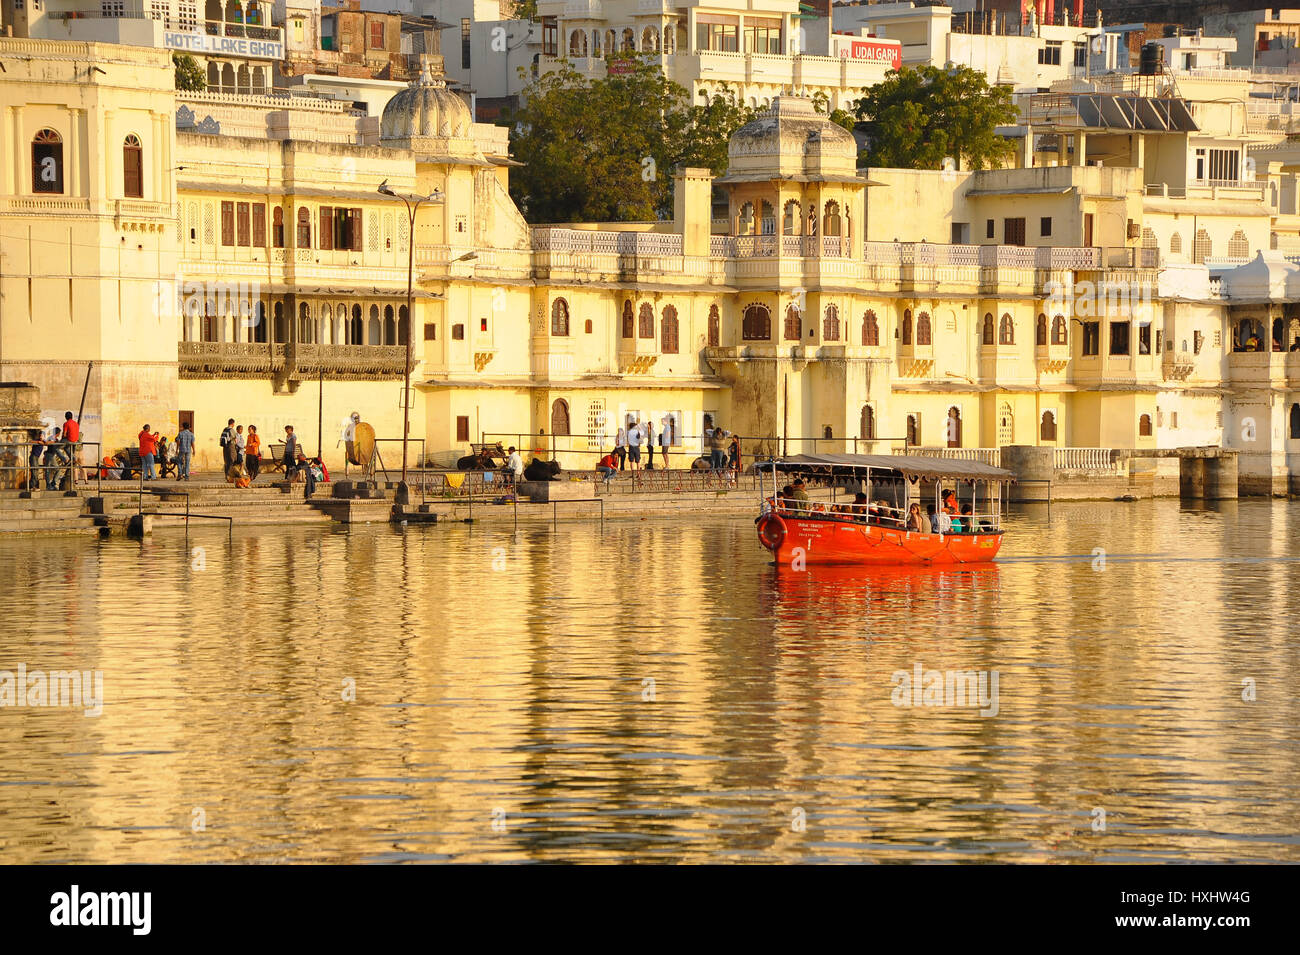 Un bateau emmène les visiteurs sur le lac Pichola, Udaipur City Palace vue comme une toile Banque D'Images